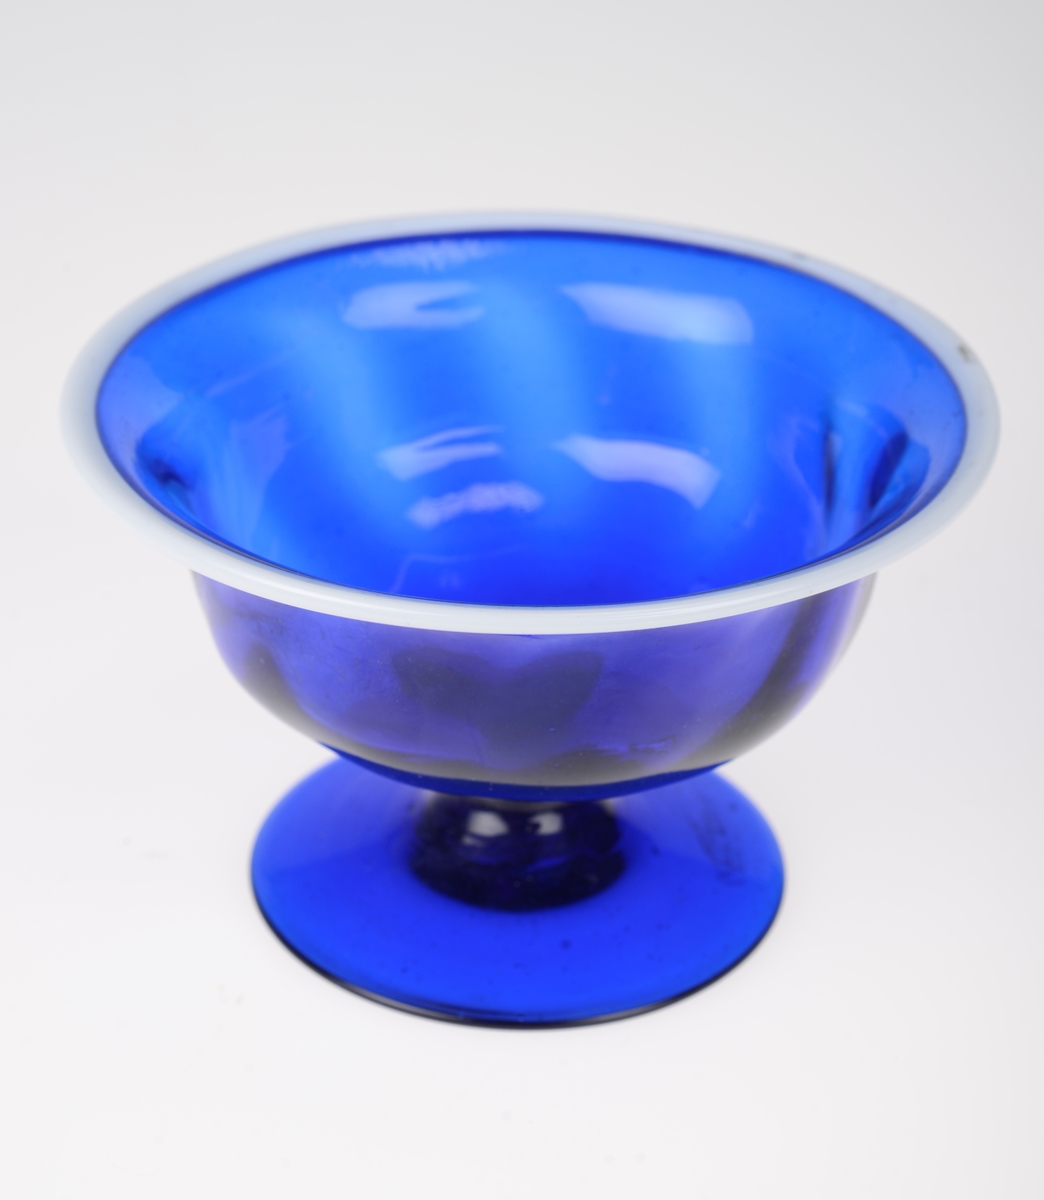 Mørk blå stettskål i glass. Bollen har en svak dekorering i form av lysere mørk blå skråstilte striper. Randen på skålen er i hvitt glass. Det kan sees små luftbobler i det blå glasset.